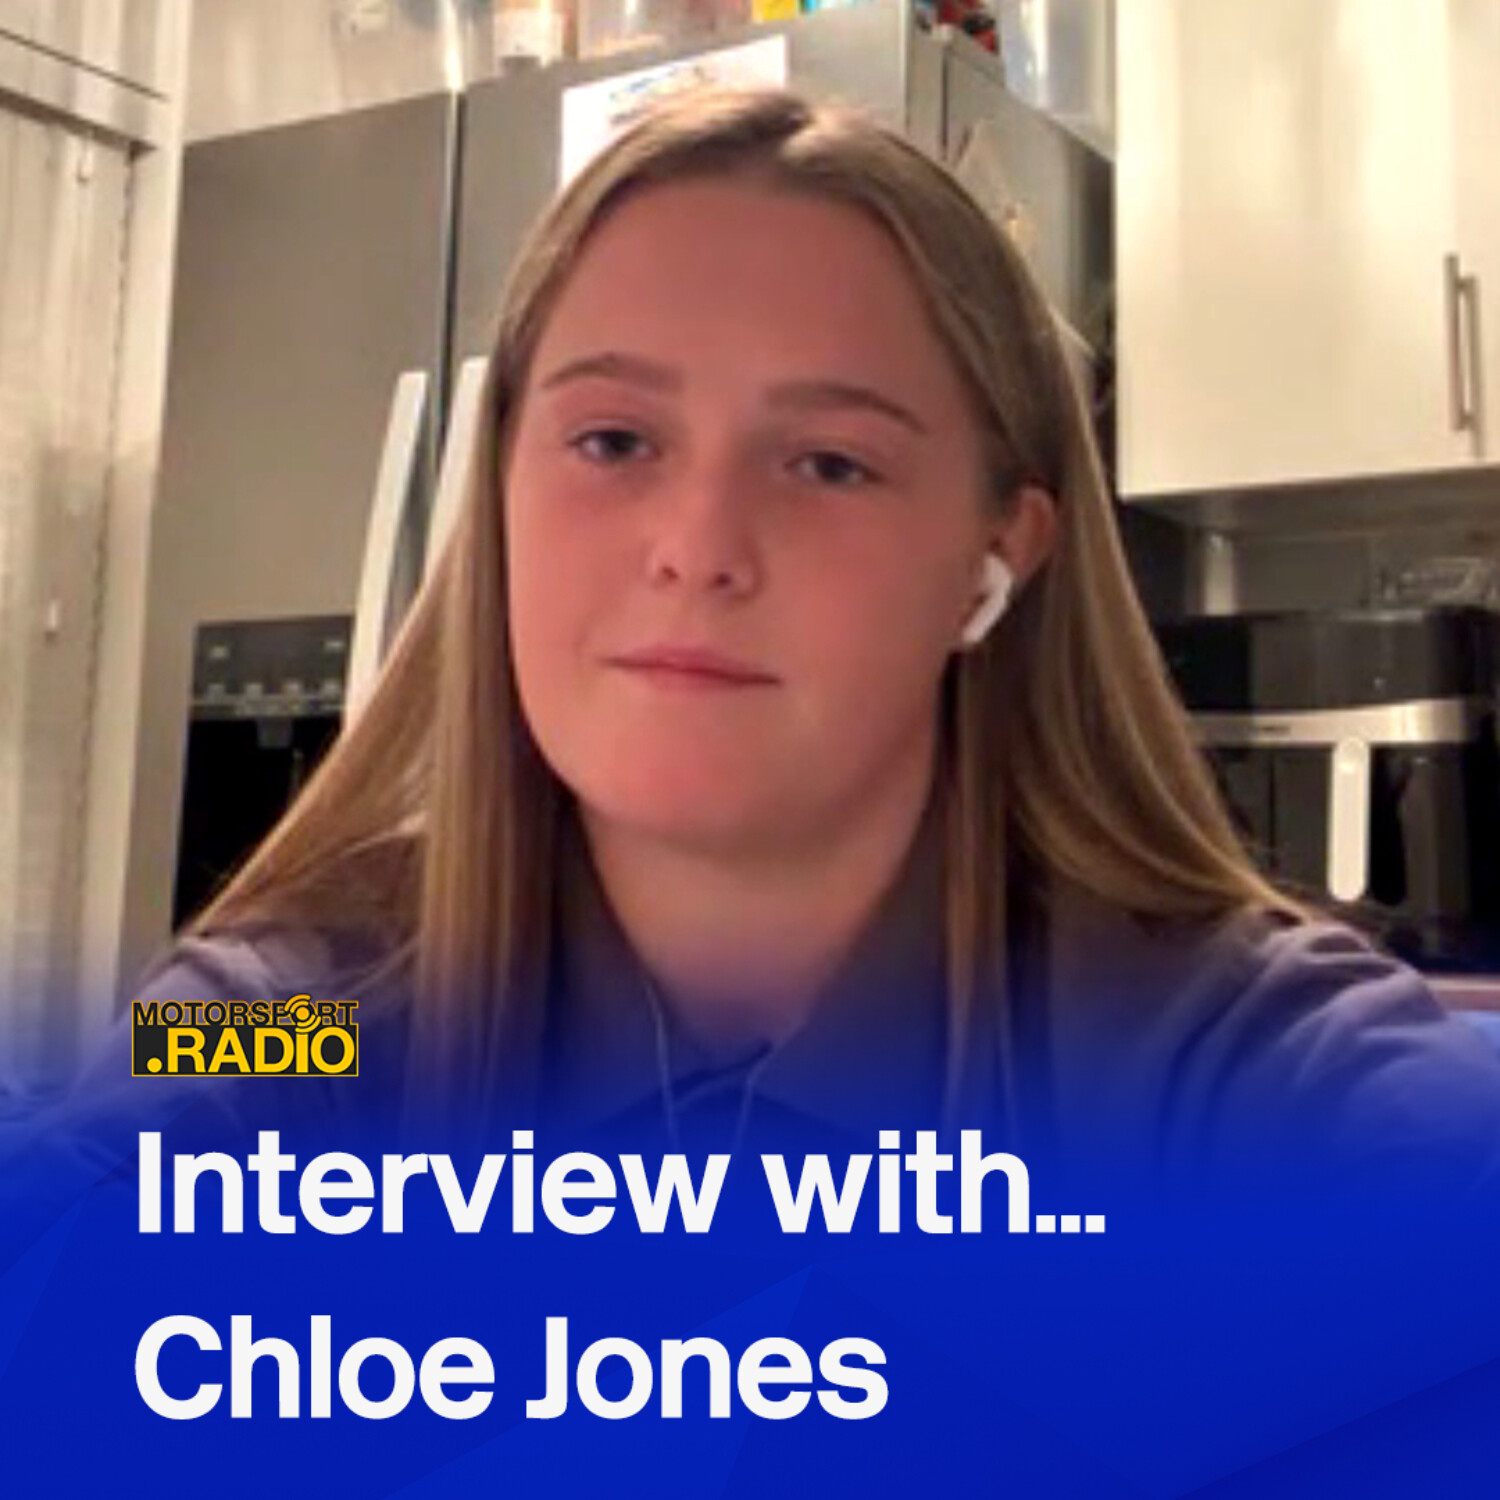 Interview with Chloe Jones